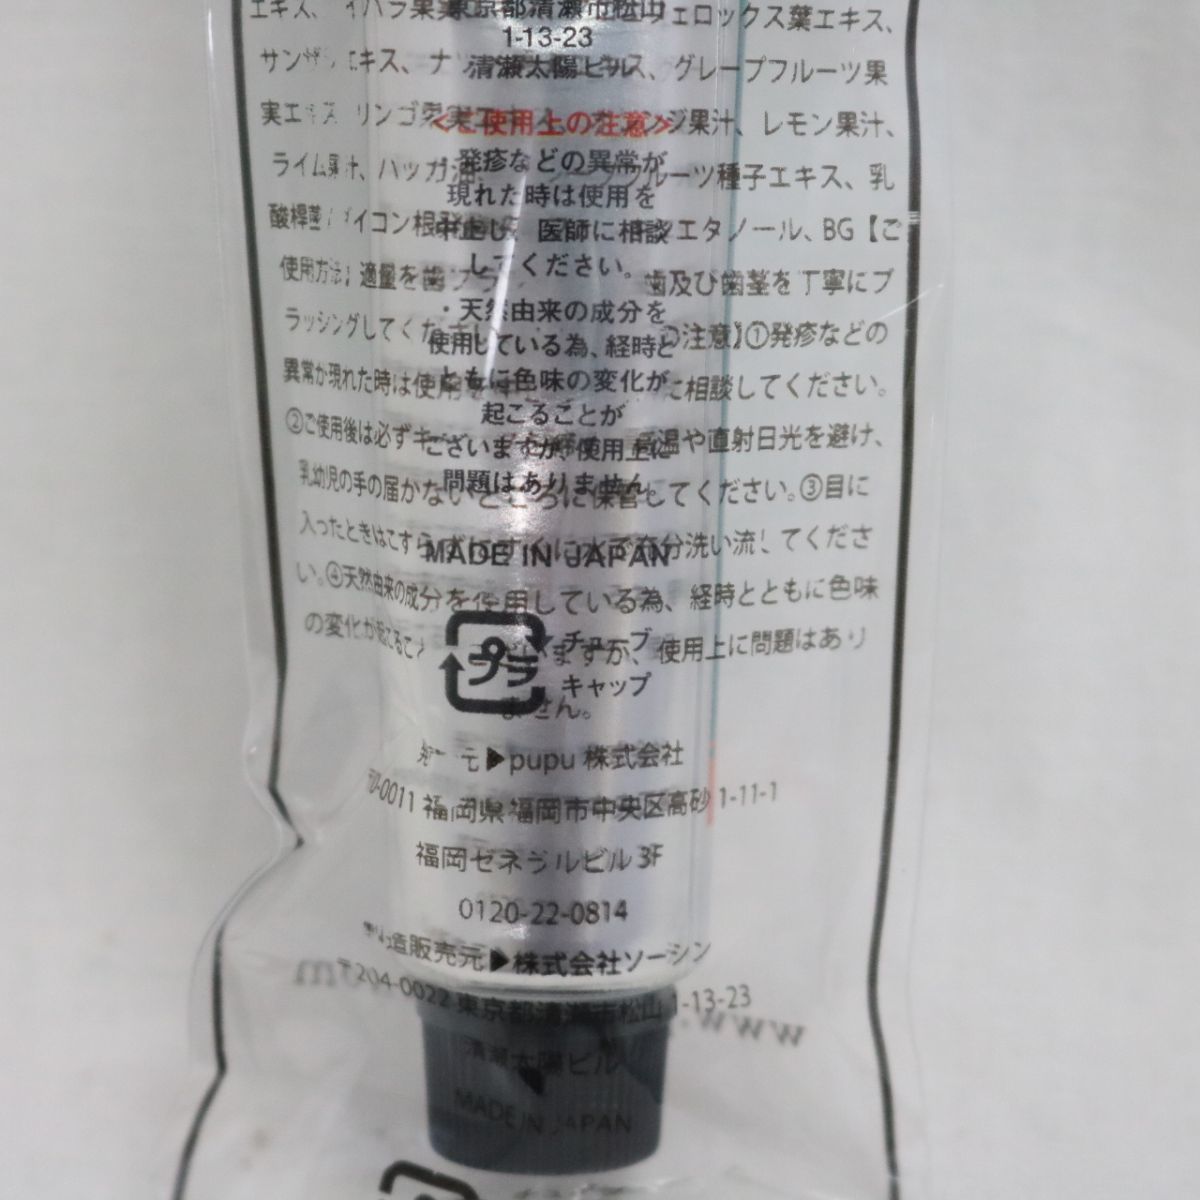 ☆新品2個セット Hokoro ホコロ ( ハミガキ ) 25g ホワイトニング 歯磨き粉 ( 0306-n1 )の画像3